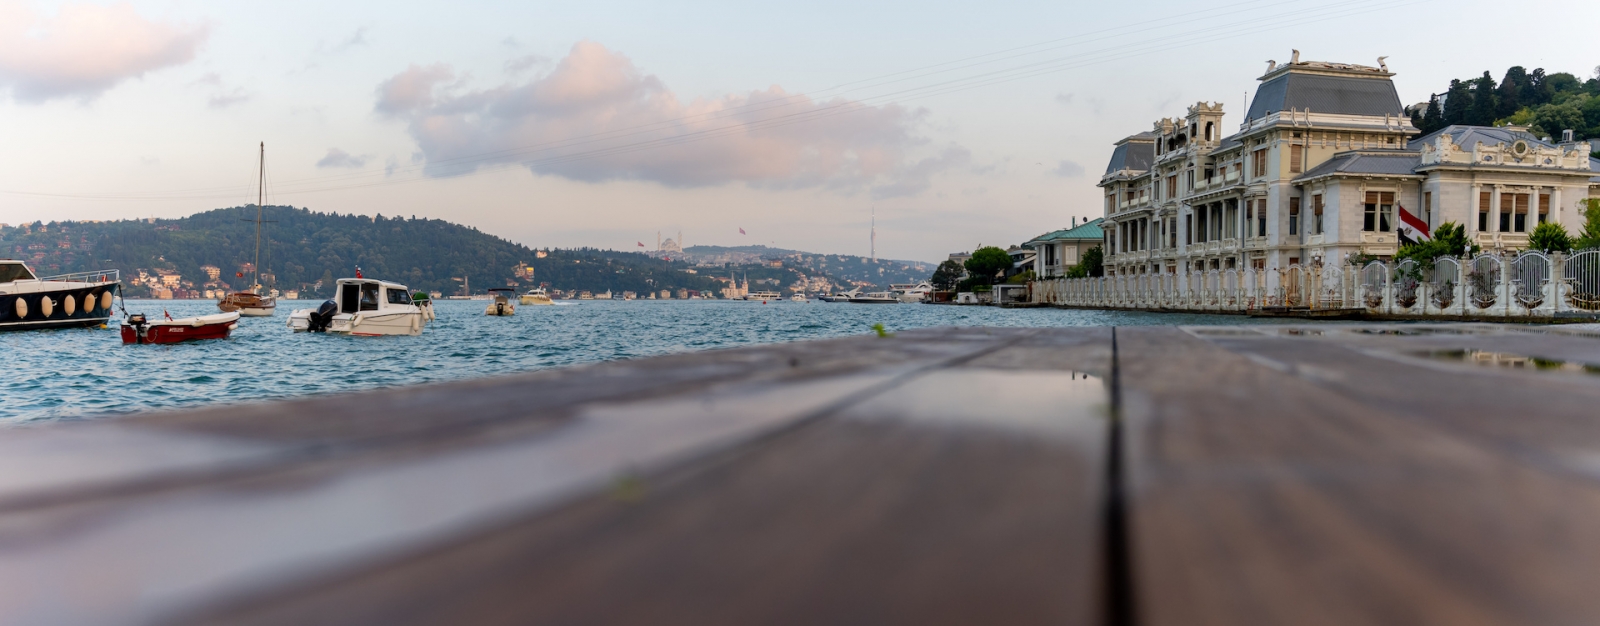 Vista sul Bosforo, sulle barche, sulla panchina del cortile e sui palazzi storici dalla spiaggia.  La spiaggia di Bebeck.  Besiktas Istanbul Turchia